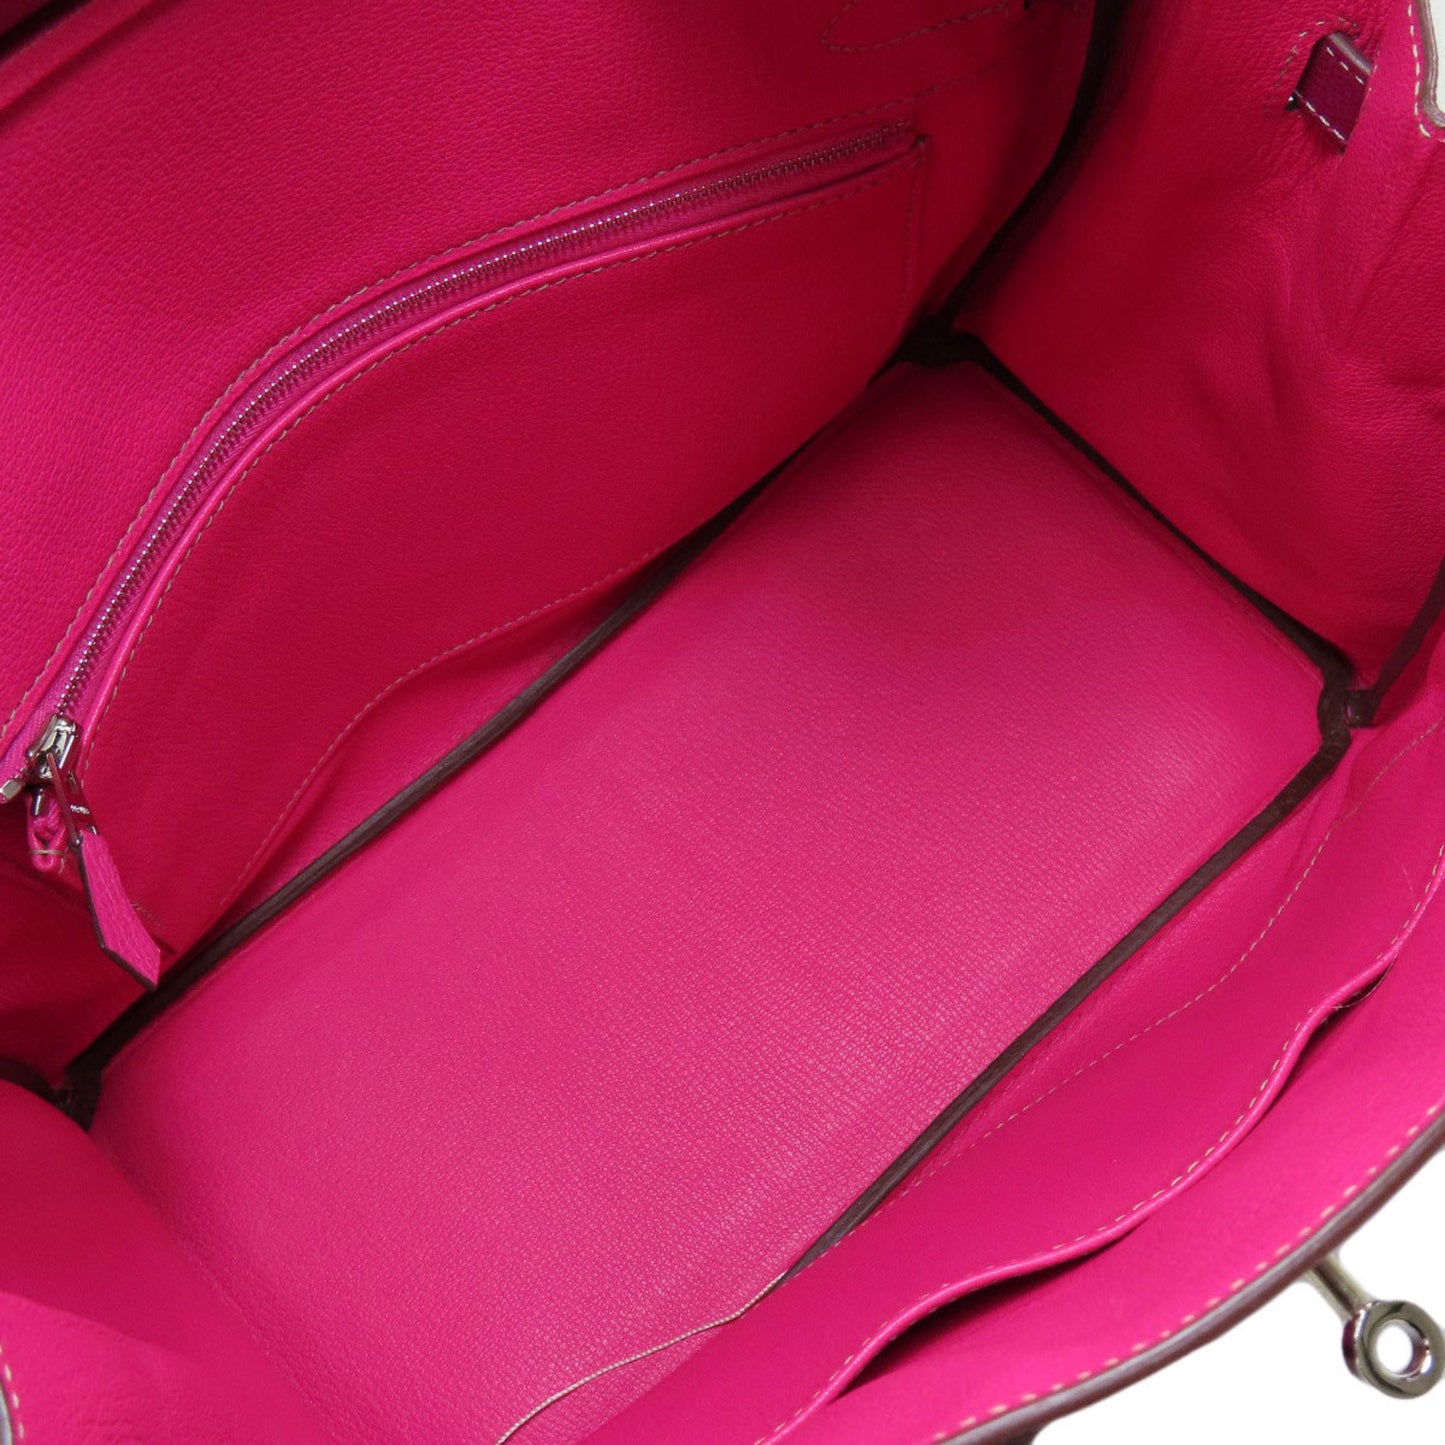 Hermes Women's Pink Leather Hermes Birkin Handbag in Pink